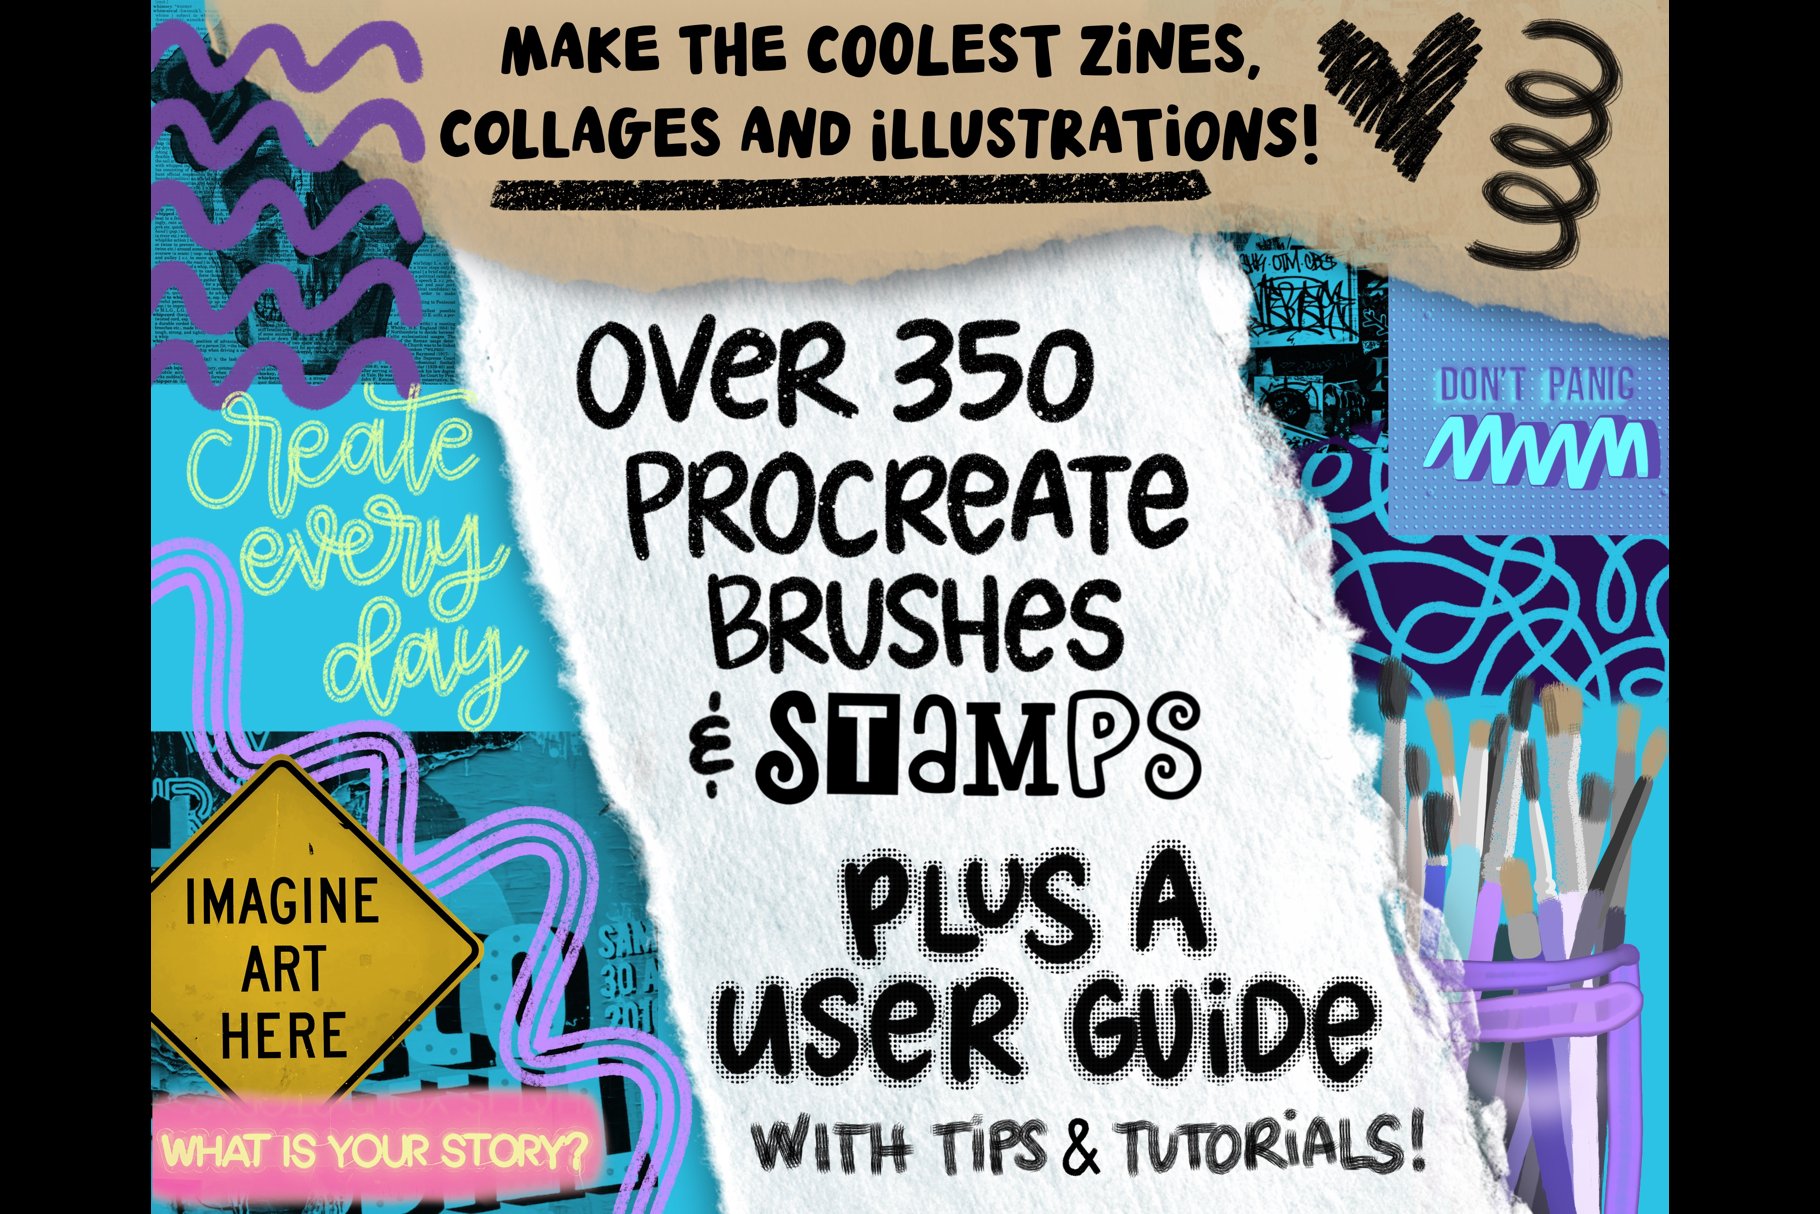 Procreate Zine Kit with 350 Brushes! 超350种画笔和图章带纹理图案、着色器、标记和刻字画笔、半色调、字母和文字图章以及逼真拼贴图章 图片素材 第10张